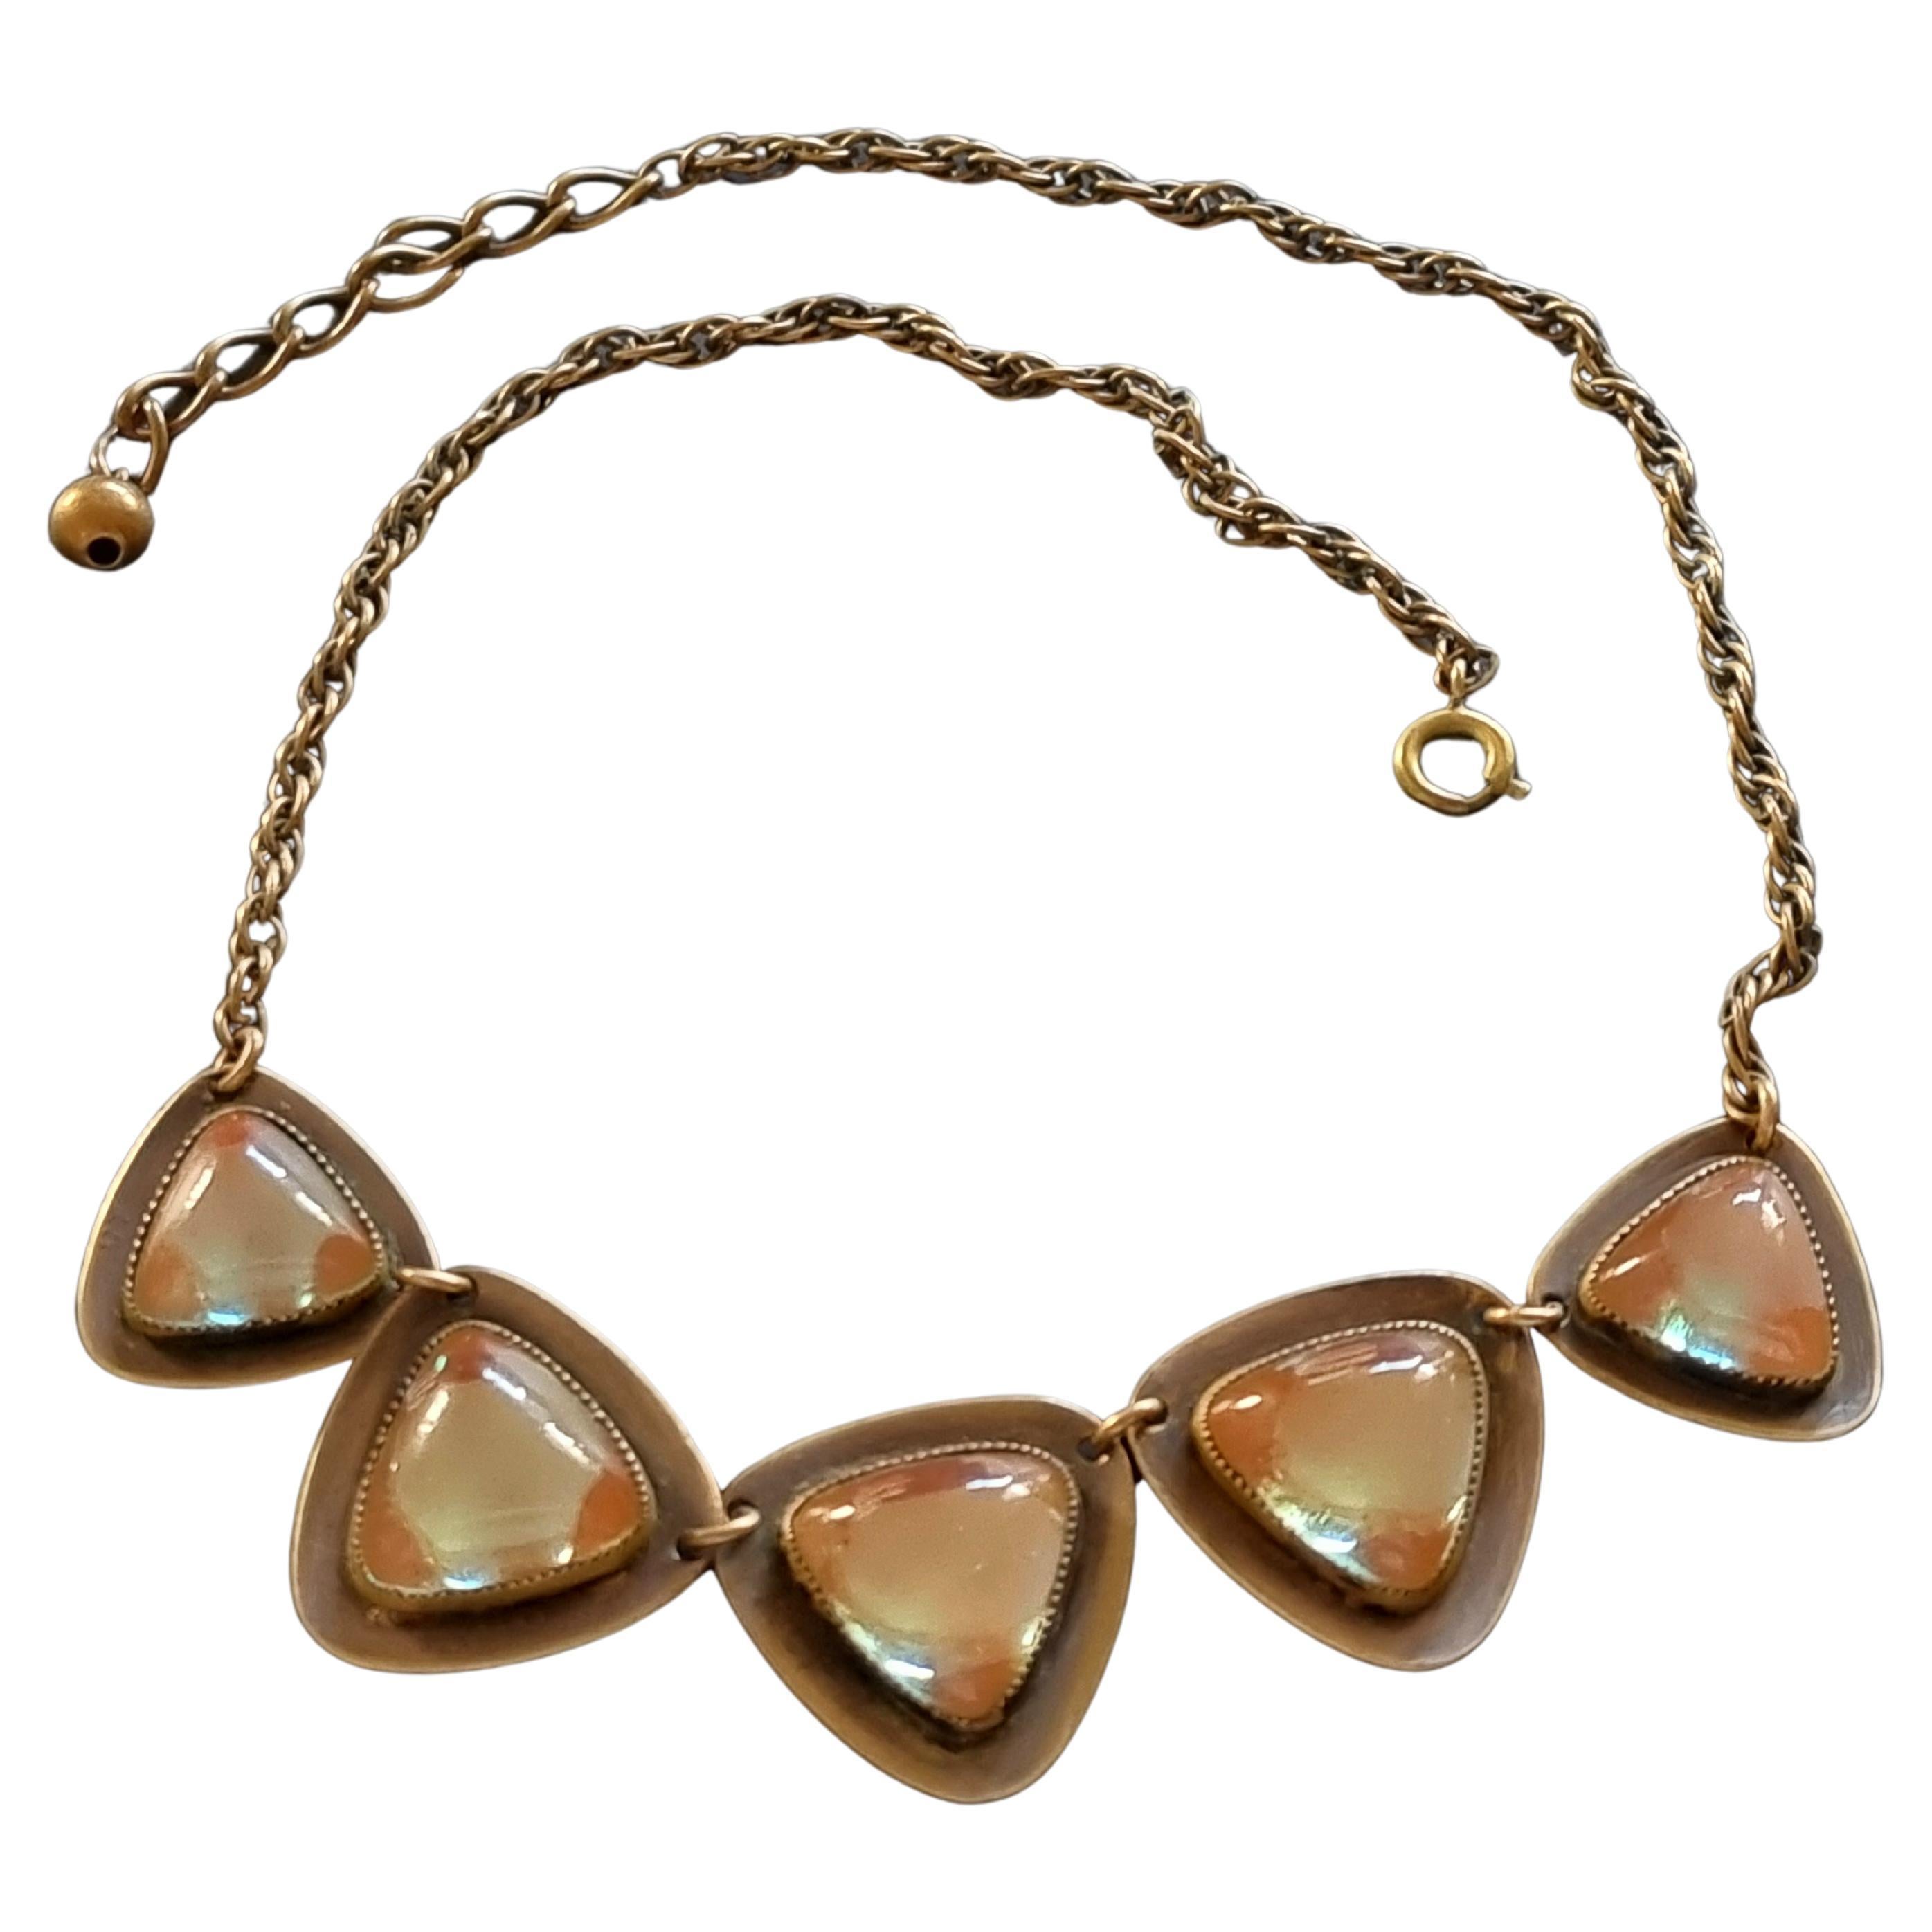 SAPHIRET, ART NOUVEAU necklace, vintage 1920s For Sale